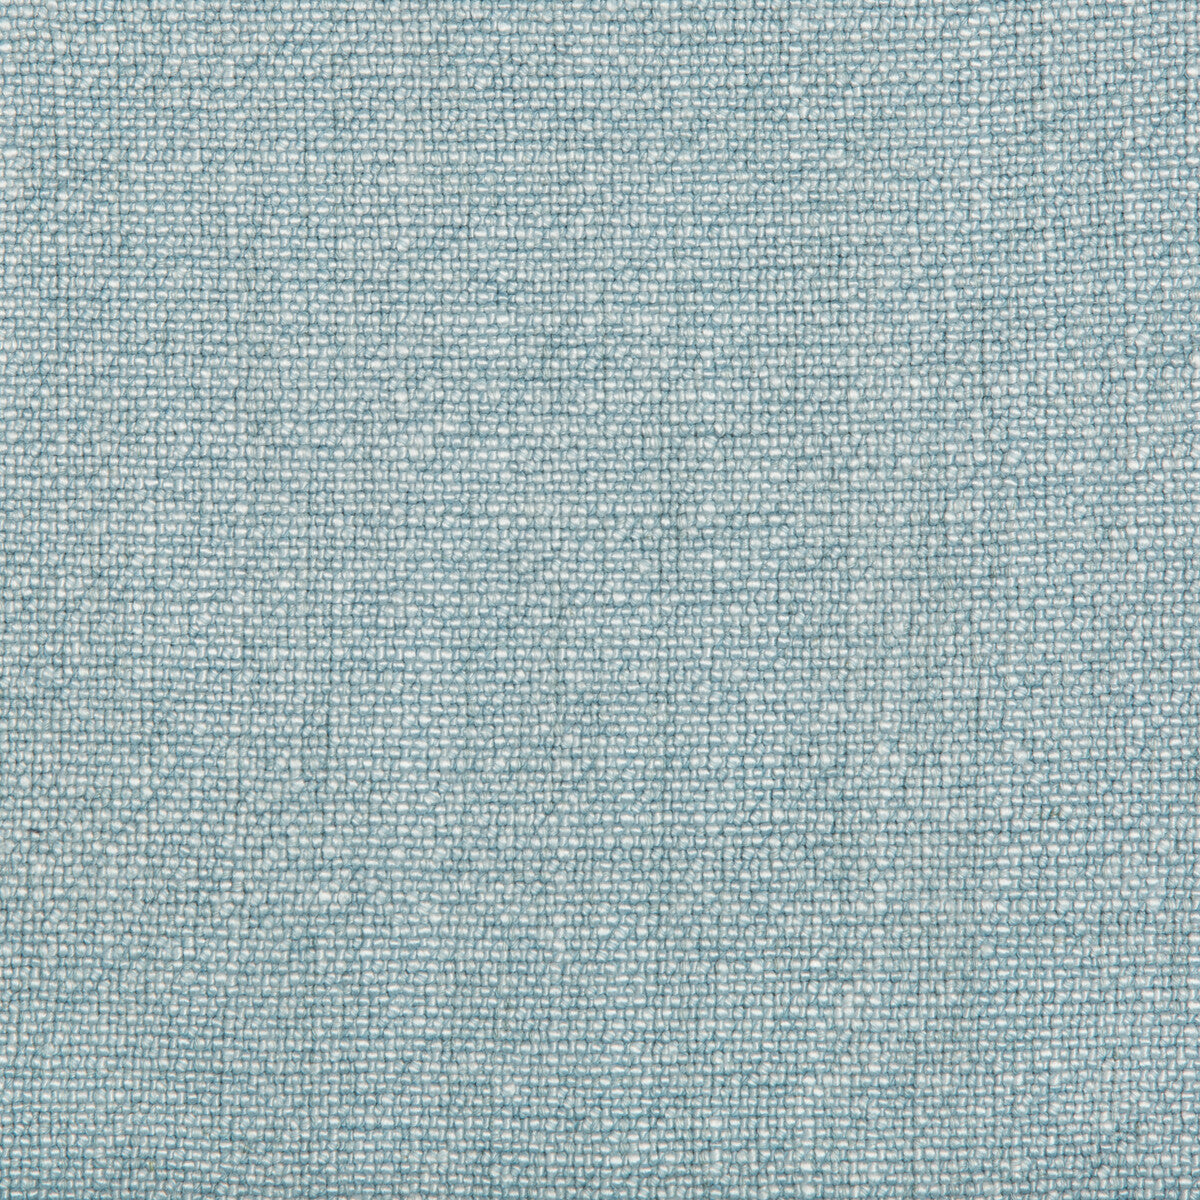 Kravet Basics fabric in 35189-115 color - pattern 35189.115.0 - by Kravet Basics